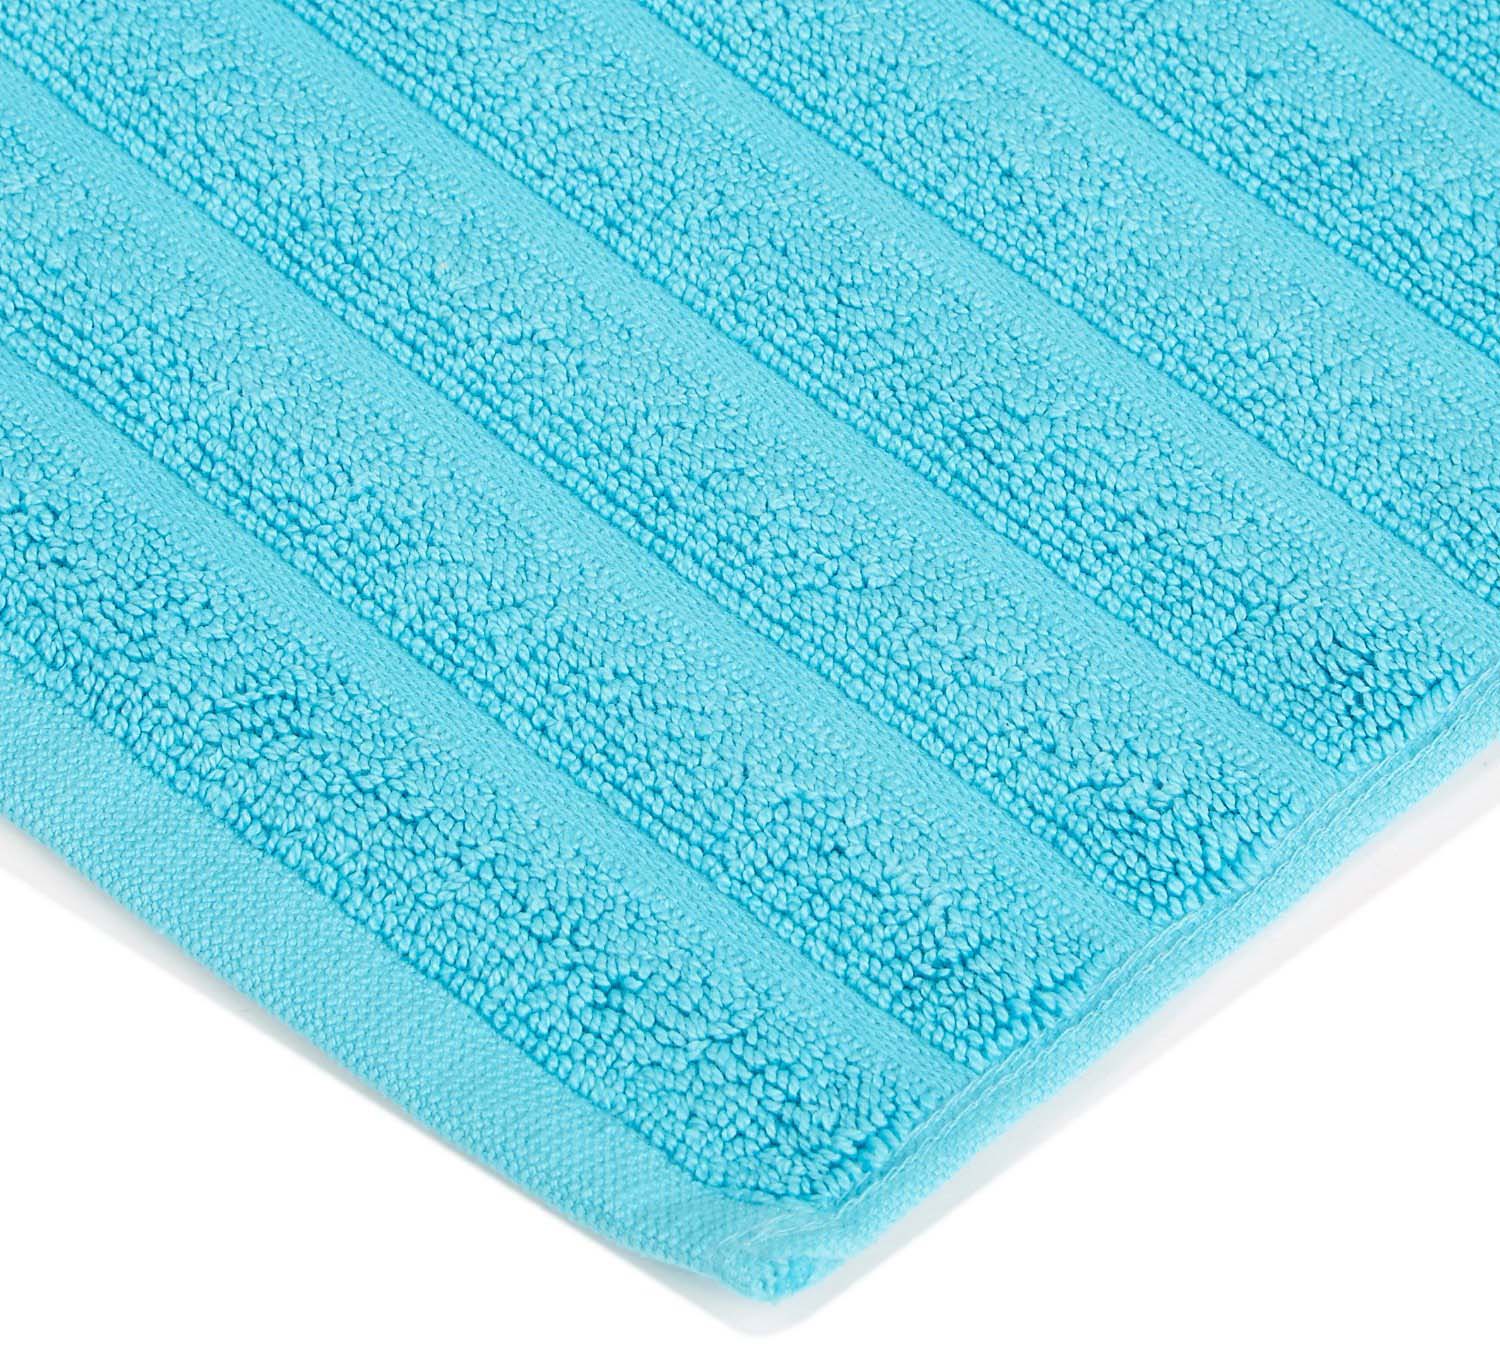 Lined 100% Cotton 1000 GSM 2-Piece Bath Mat Set - Turquoise